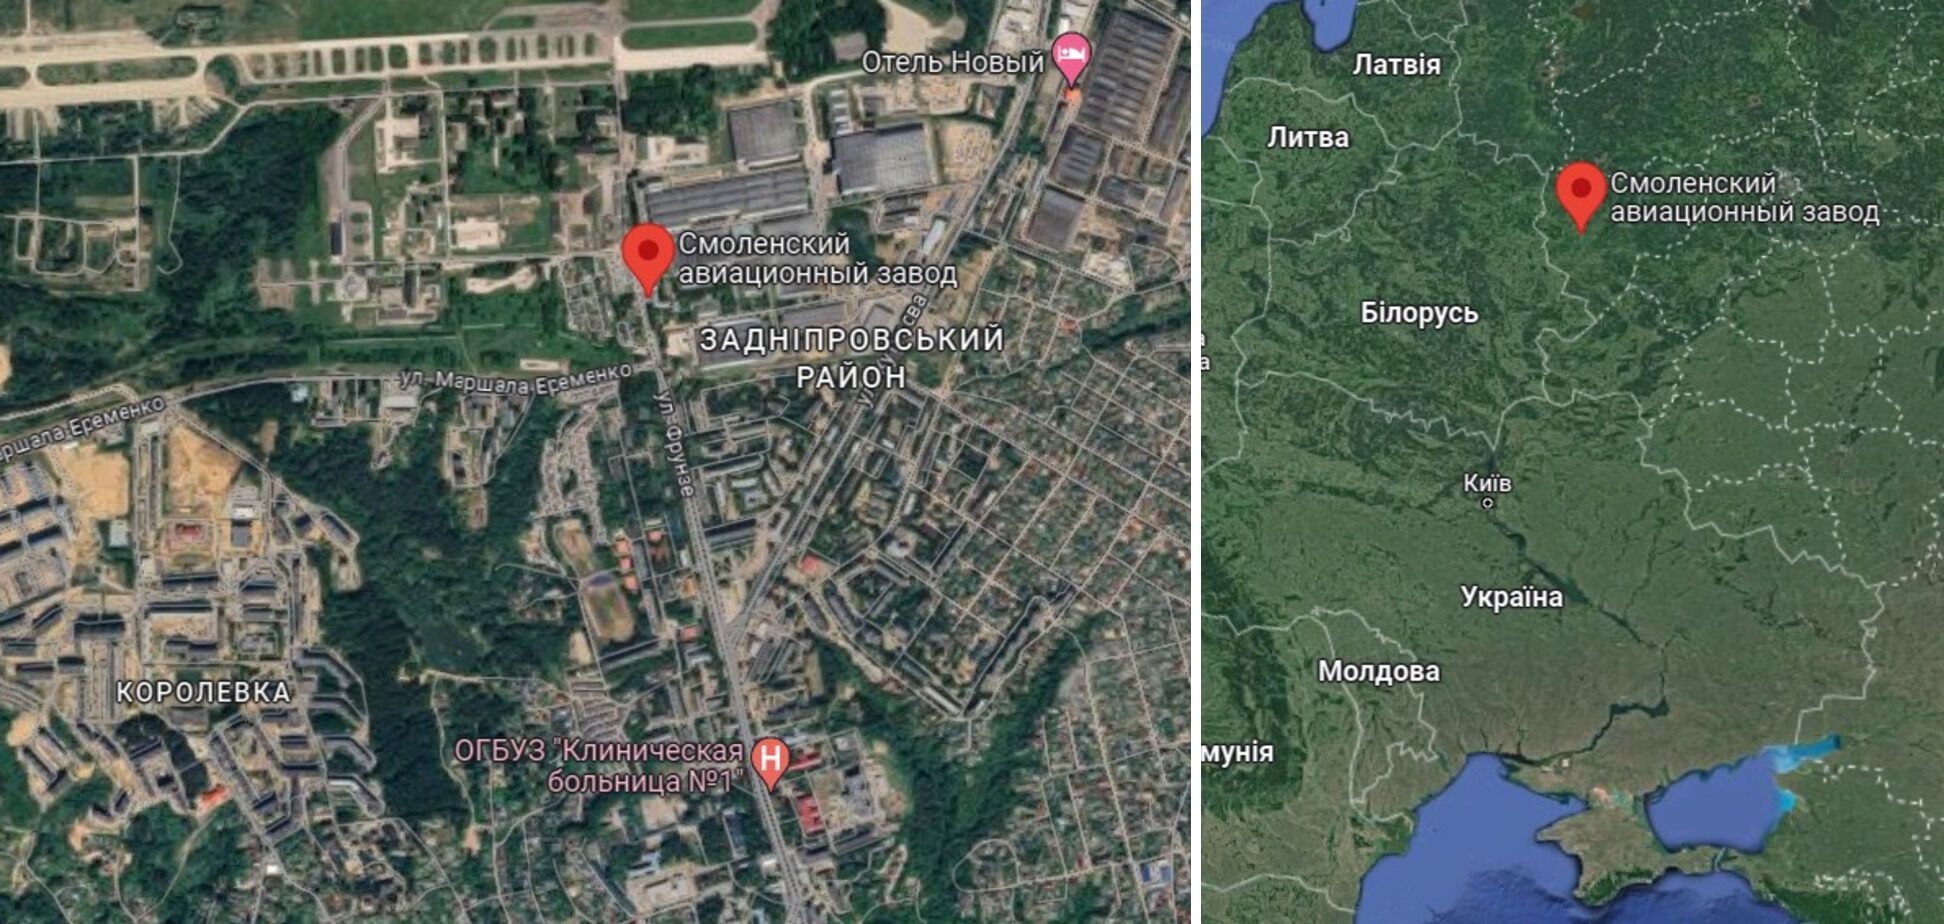 Три из четырех дронов попали в цель: в ГУР раскрыли детали атаки по авиазаводу в Смоленске, где производили ракеты Х-59